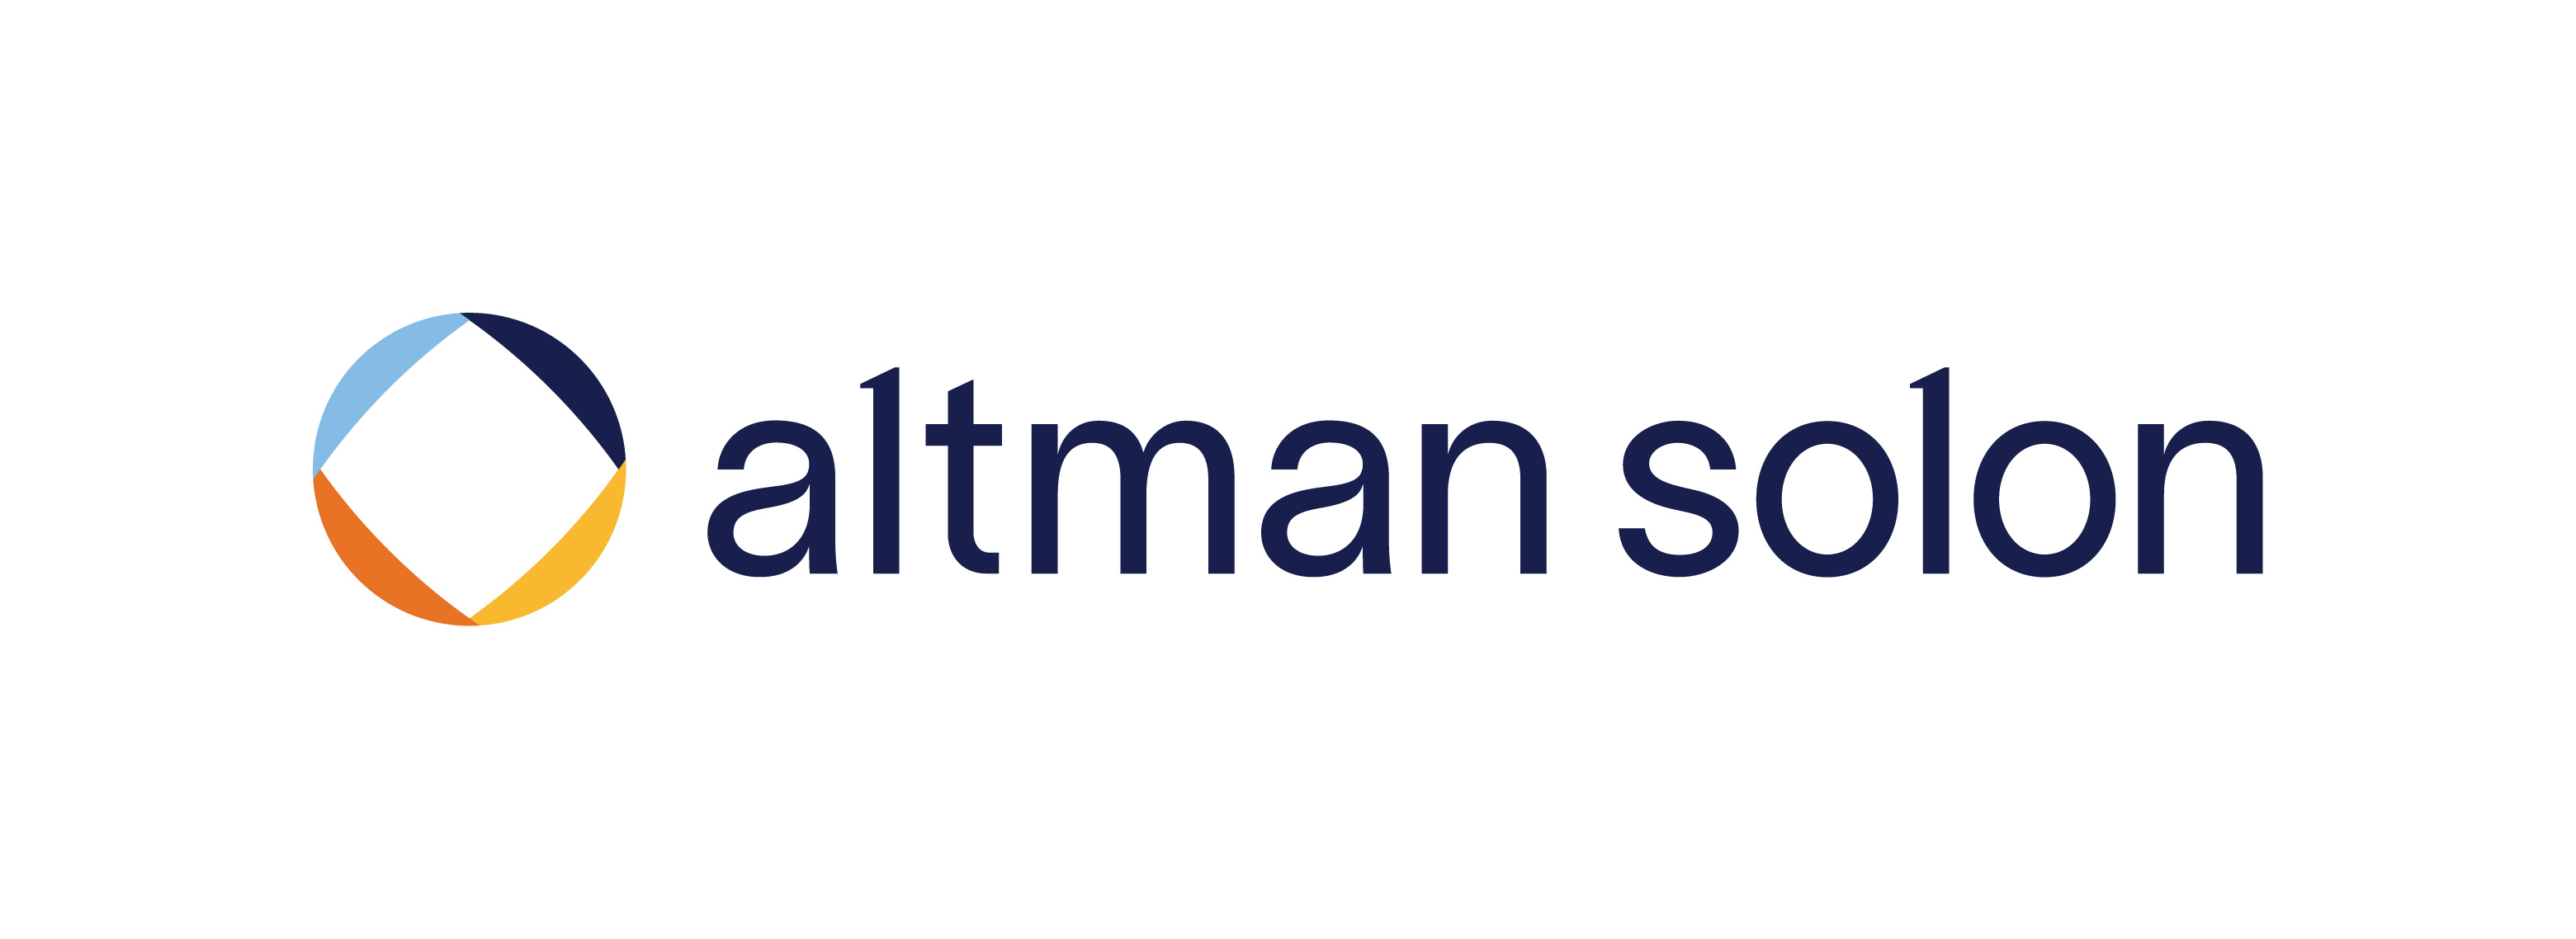 Altman Solon GmbH & Co. KG logo